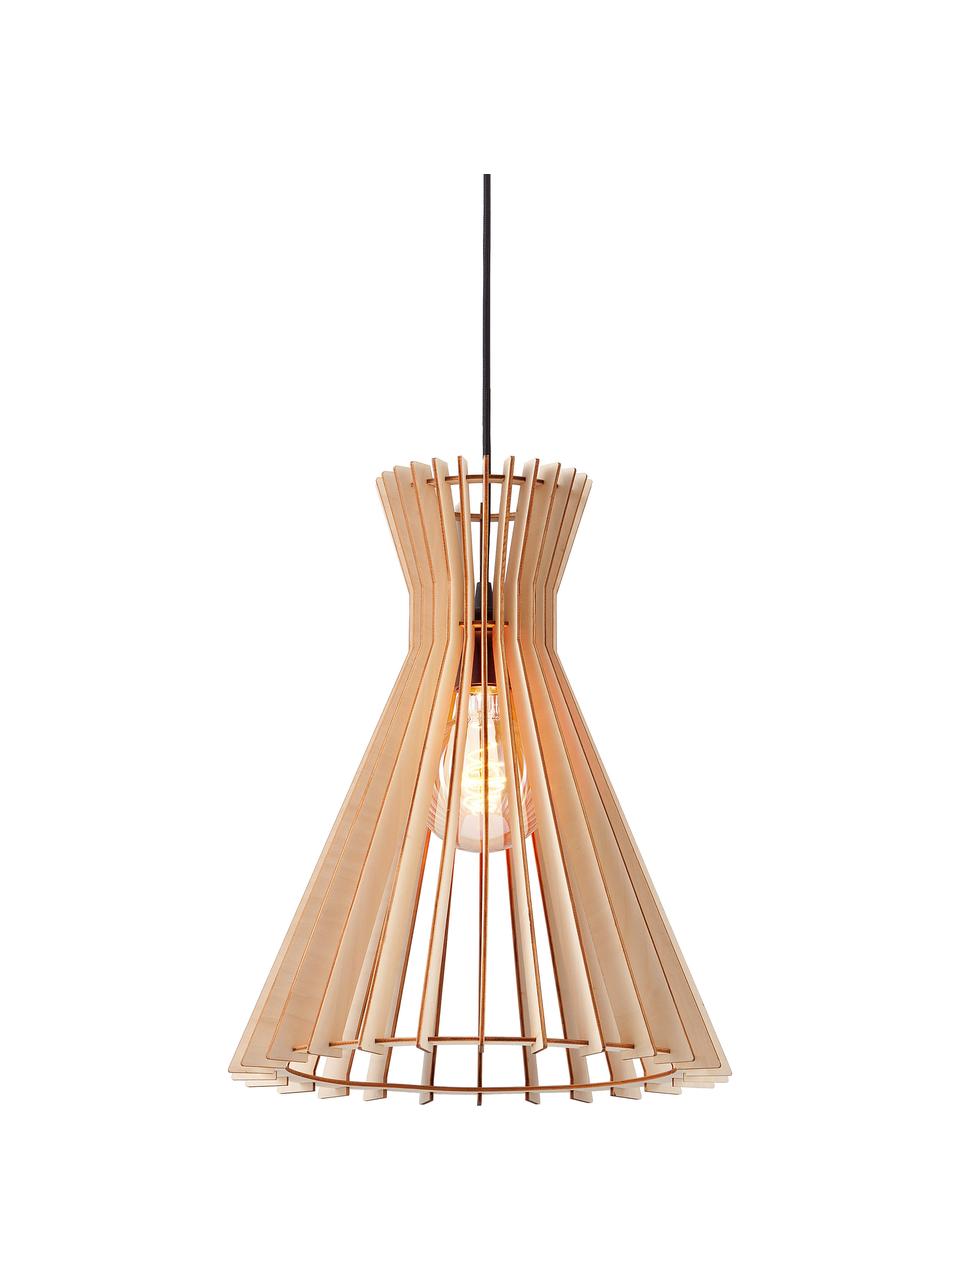 Boho hanglamp Groa van hout, Lampenkap: hout, Baldakijn: gecoat metaal, Beige, Ø 34 x H 41 cm